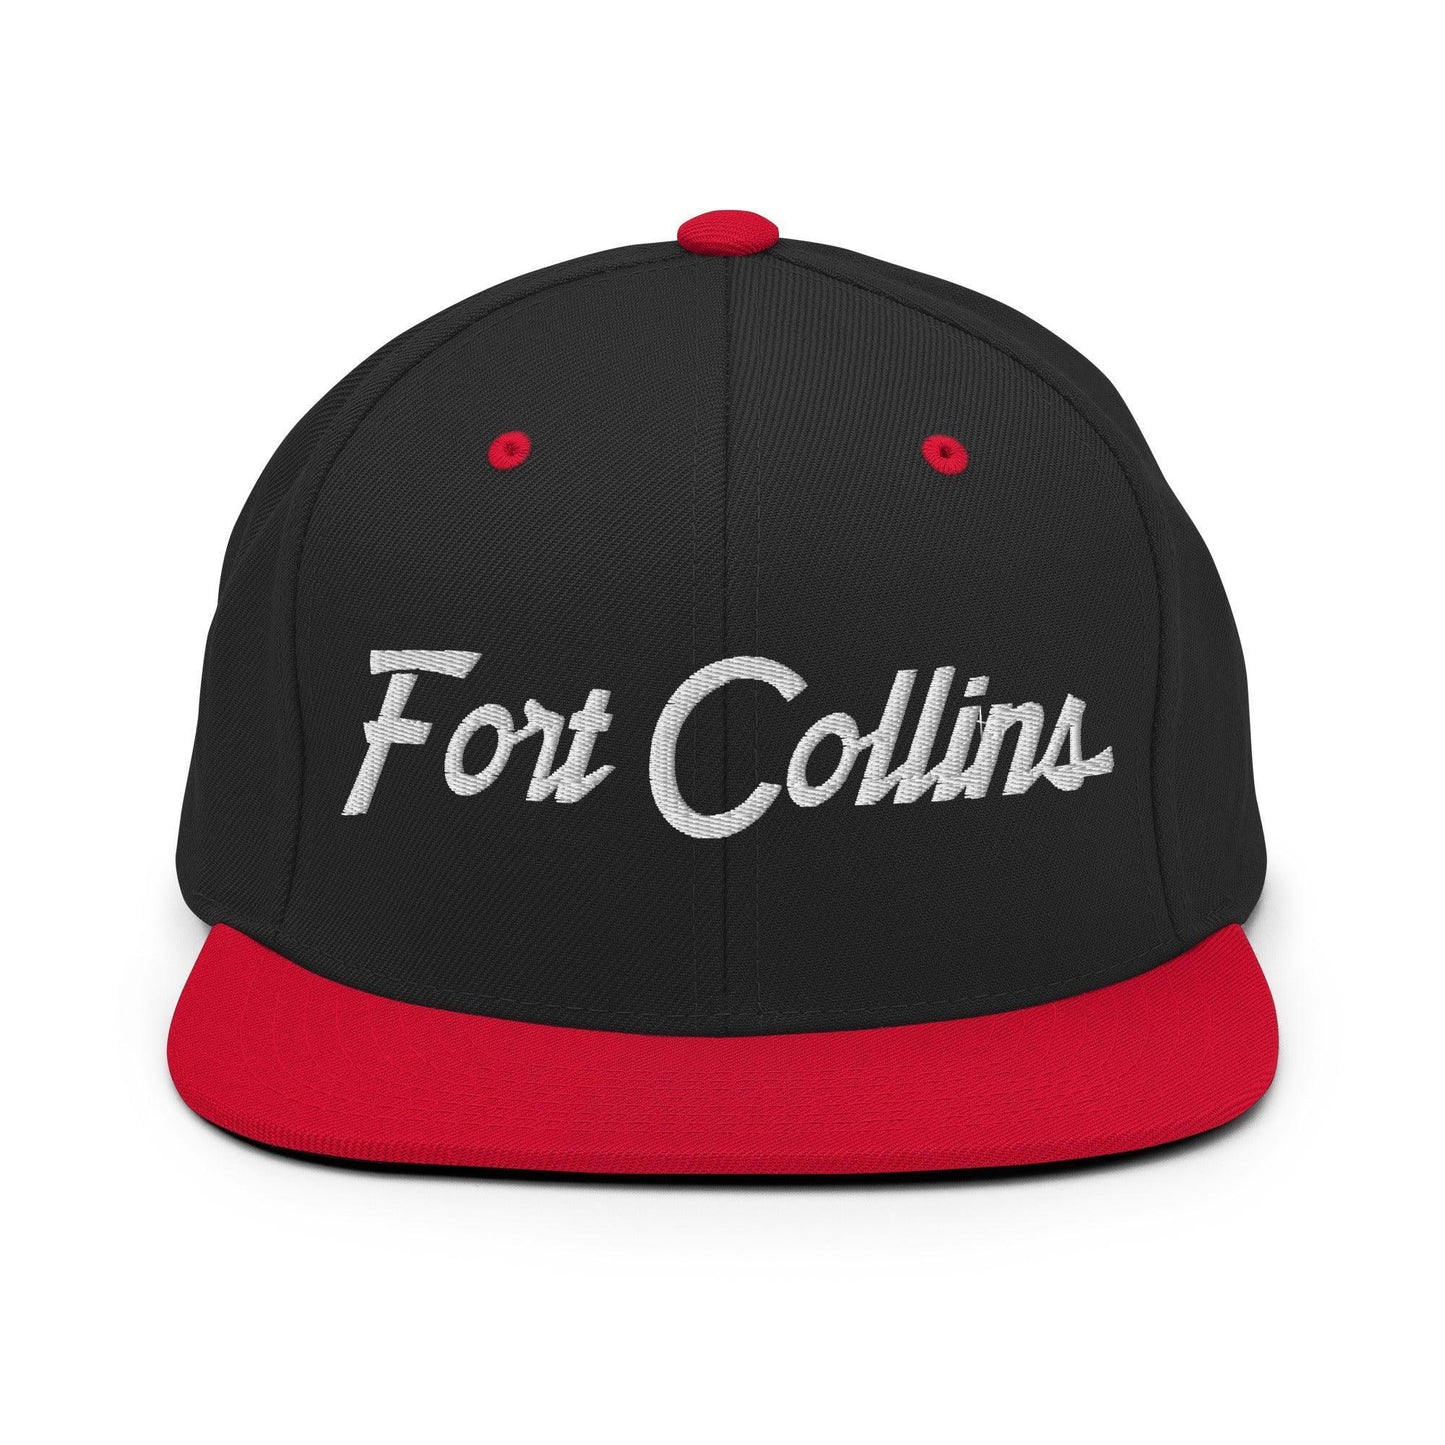 Fort Collins Script Snapback Hat Black Red